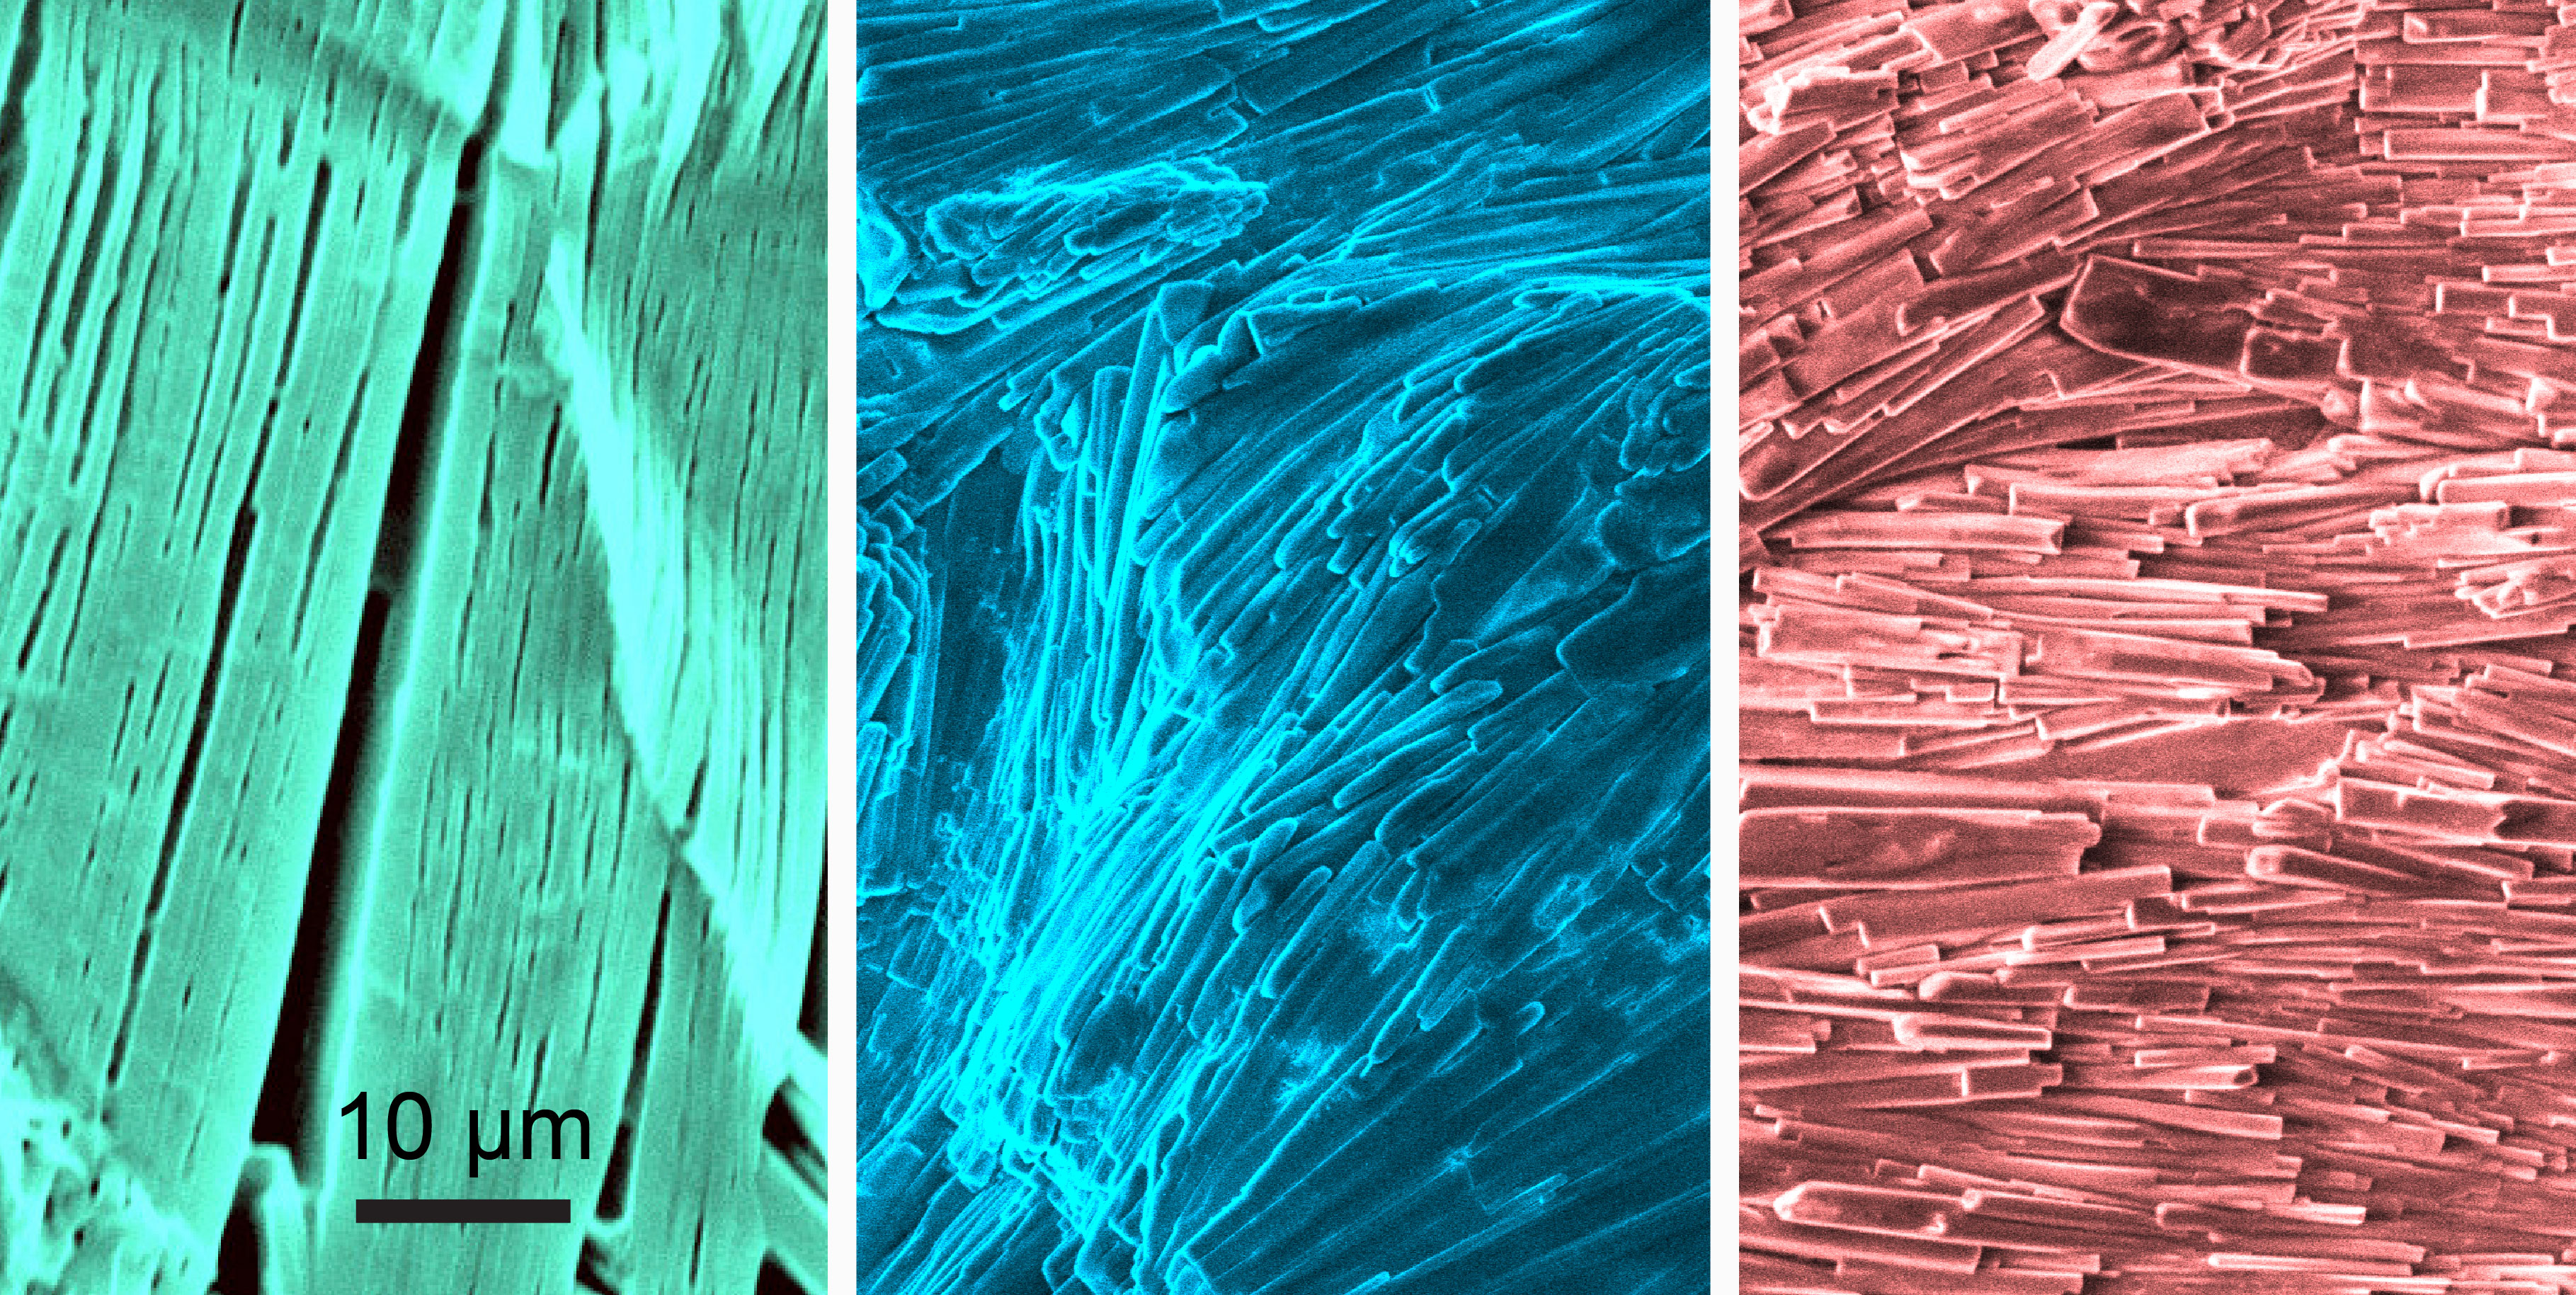 SEM images (false colour) depicting the intricate gel fibre architecture